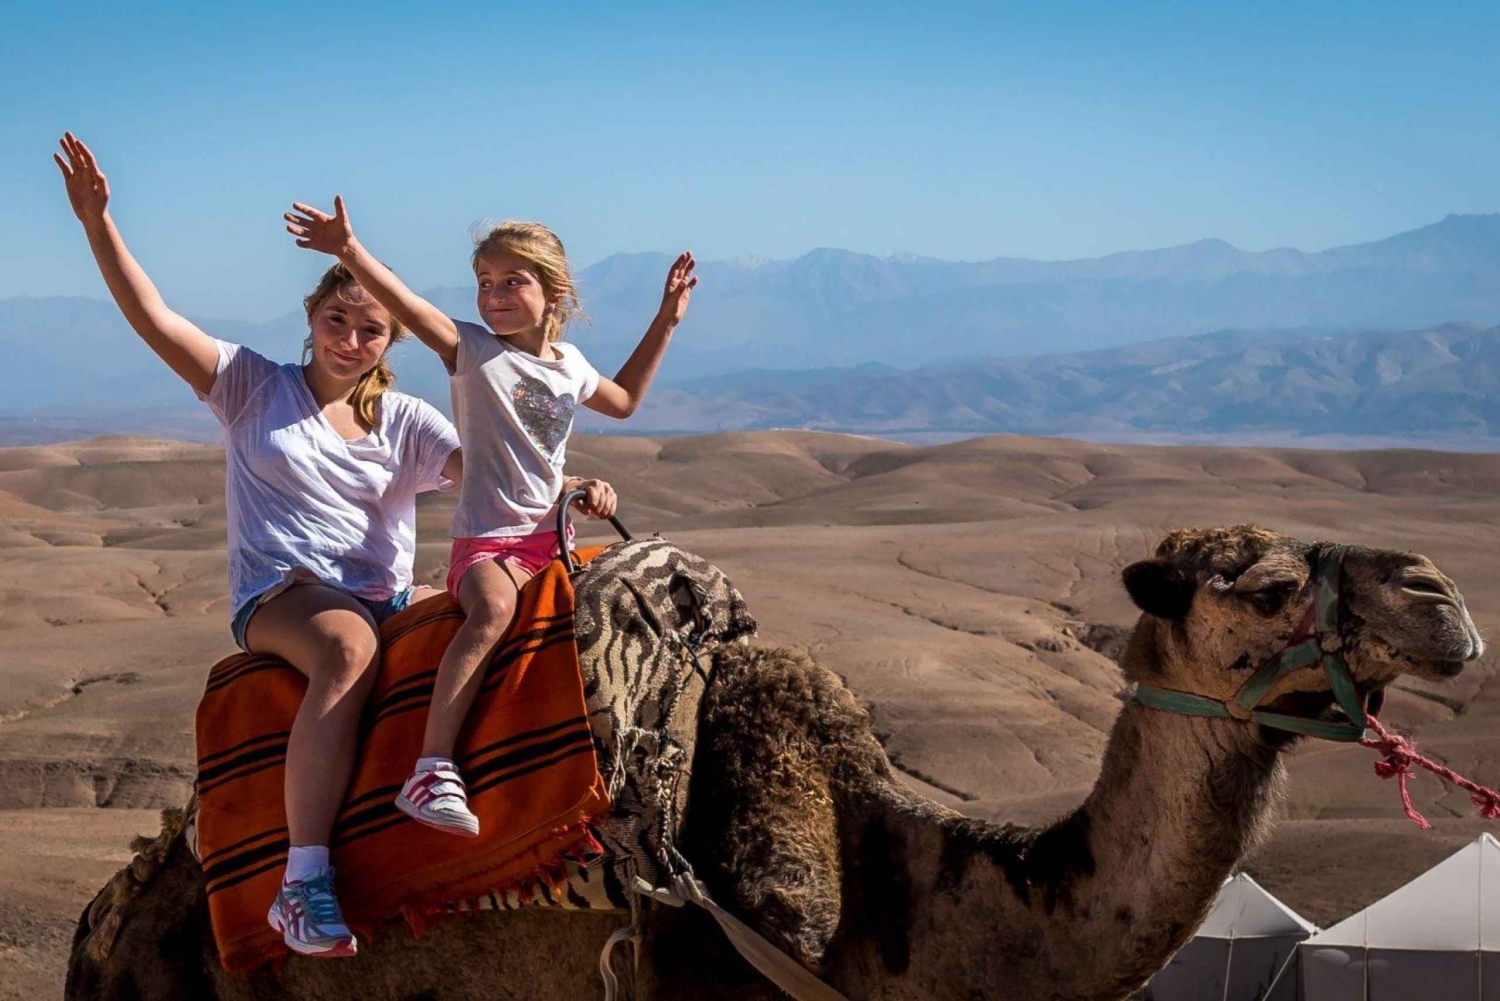 From Marrakesh: Camel Ride Agafay Desert Sunset and Dinner